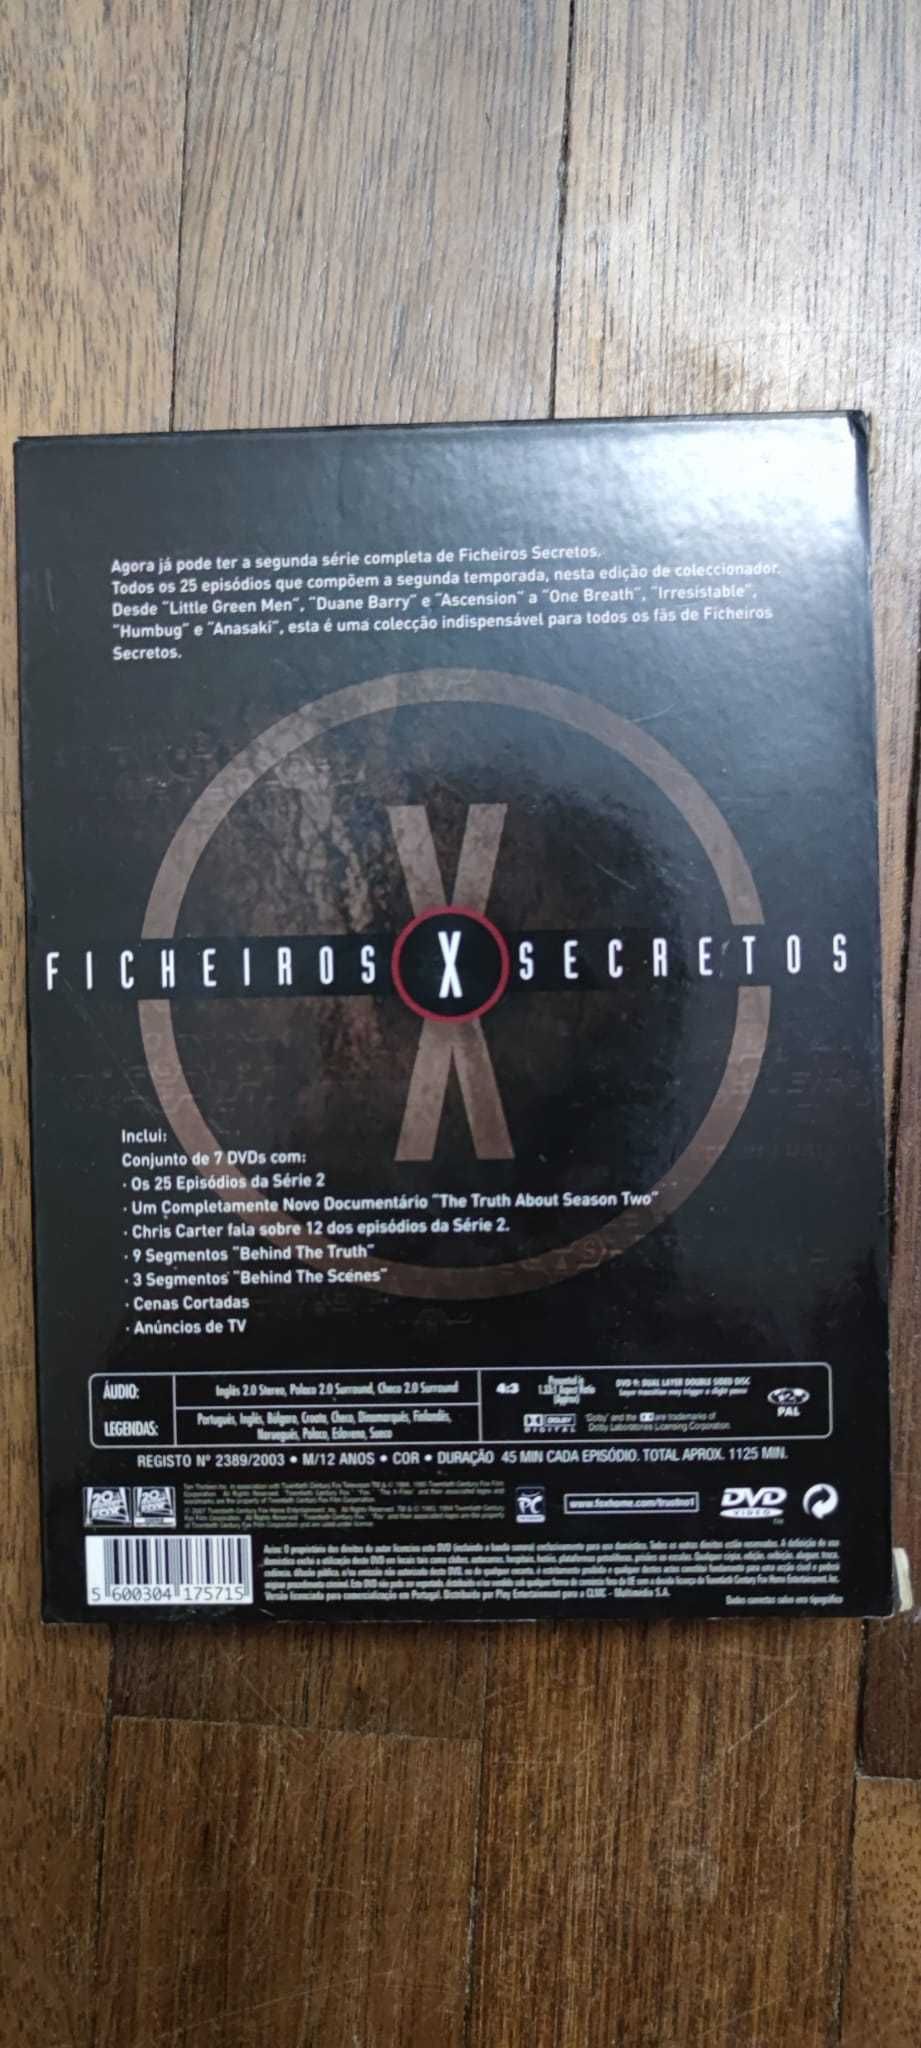 Segunda temporada completa de Ficheiros Secretos (The X-Files) em DvD